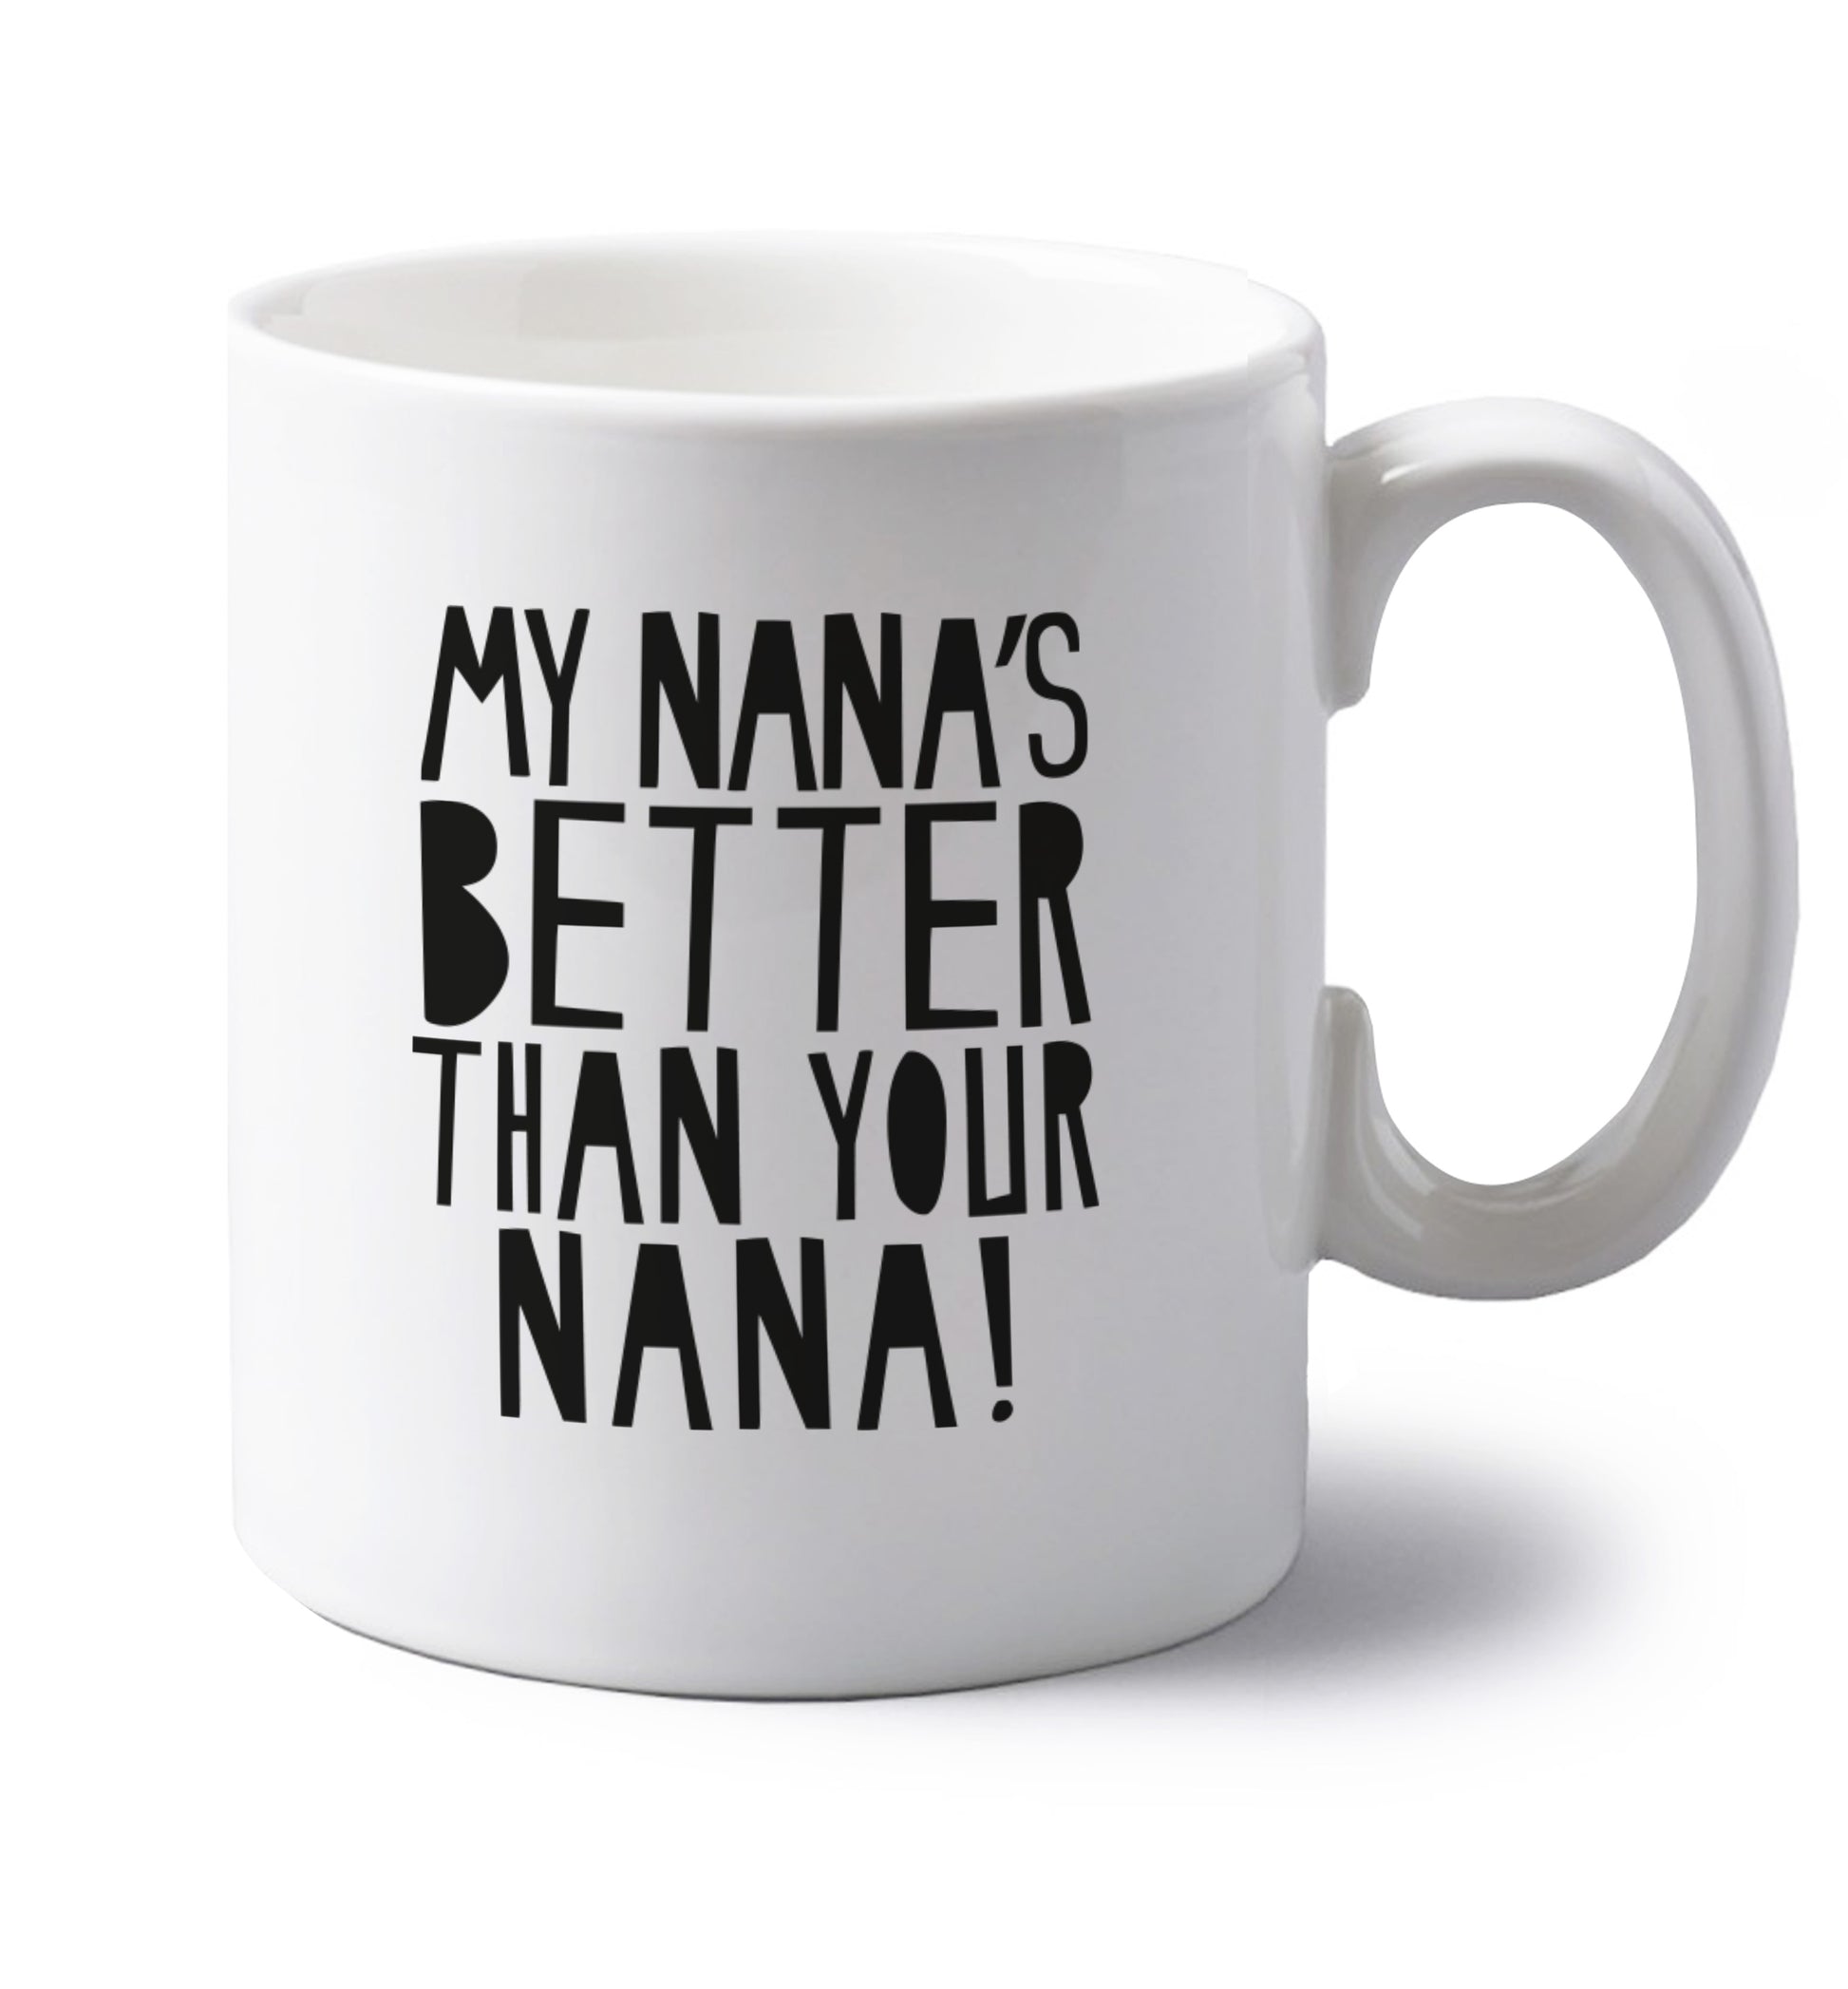 My nana's better than your nana left handed white ceramic mug 